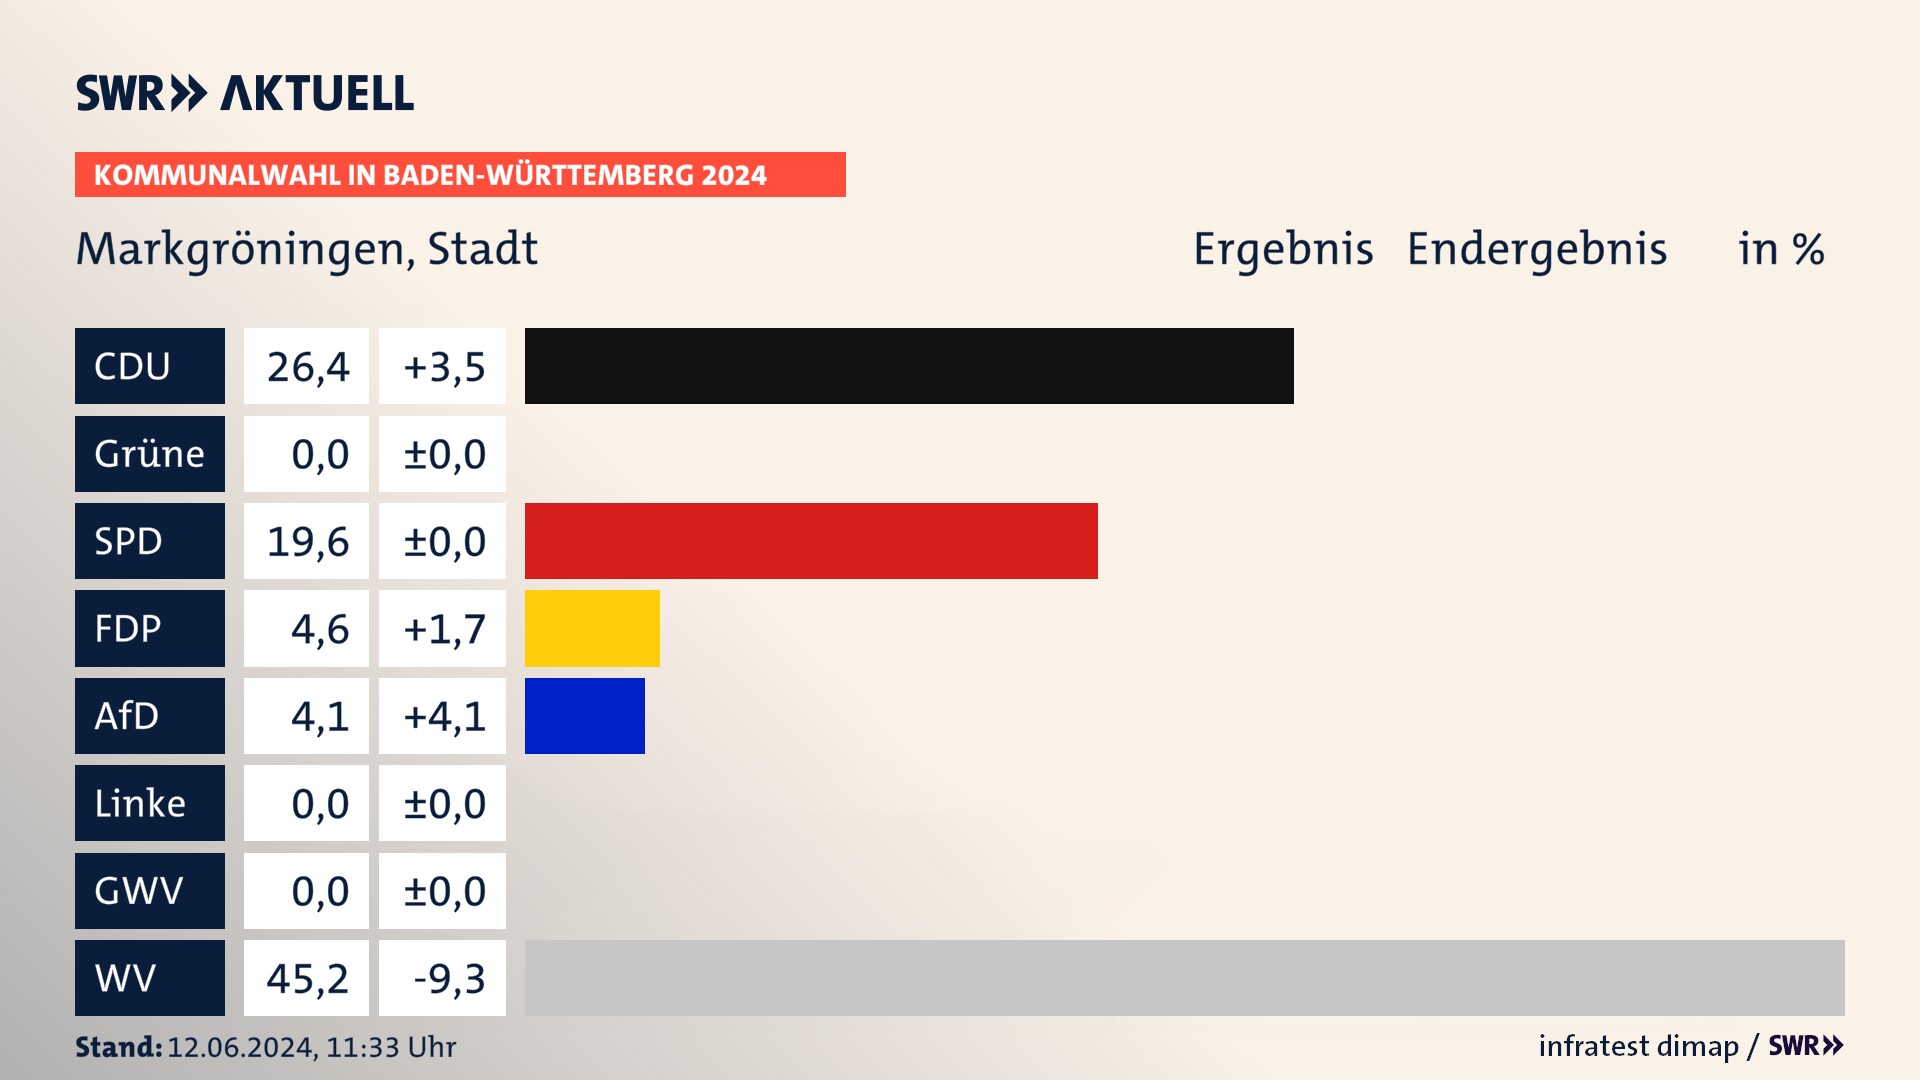 Kommunalwahl 2024 Endergebnis Zweitstimme für Markgröningen. In Markgröningen, Stadt erzielt die CDU 26,4 Prozent der gültigen  Stimmen. Die SPD landet bei 19,6 Prozent. Die FDP erreicht 4,6 Prozent. Die AfD kommt auf 4,1 Prozent. Die Wählervereinigungen landen bei 45,2 Prozent.